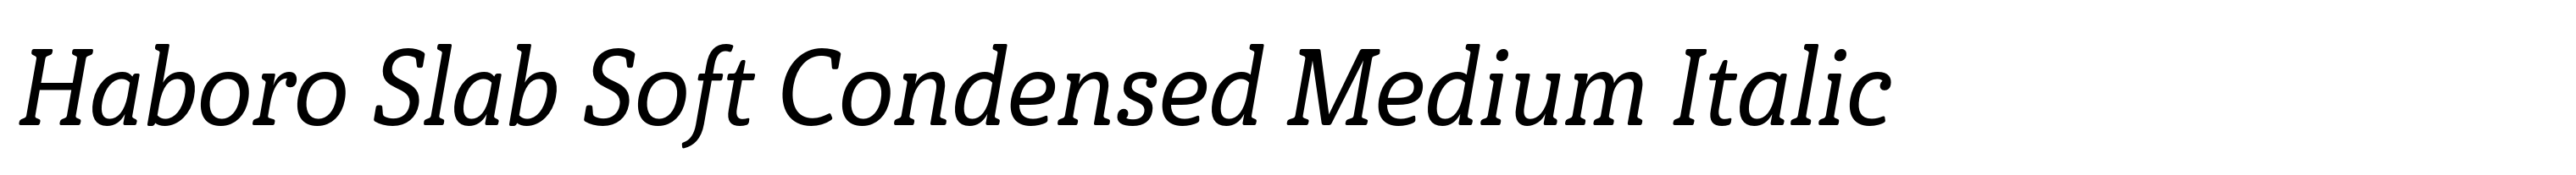 Haboro Slab Soft Condensed Medium Italic